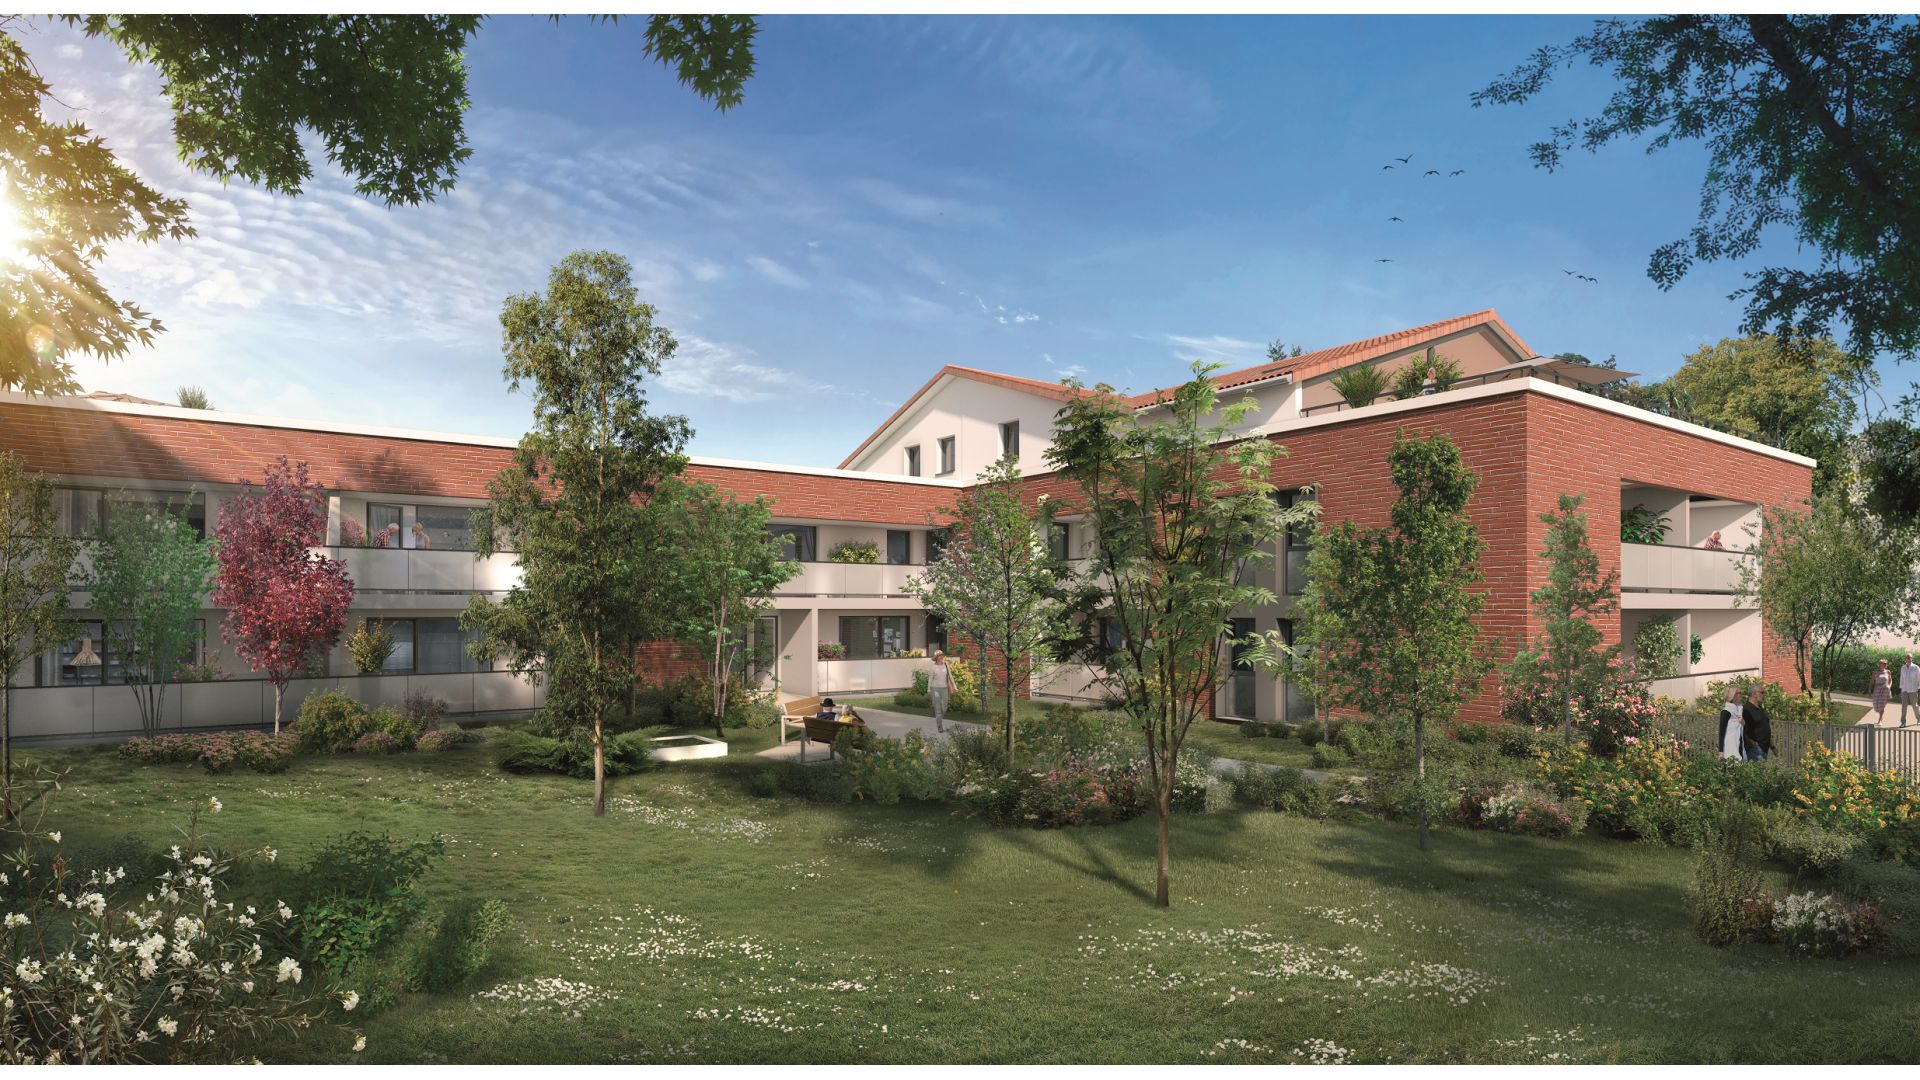 Greencity immobilier - achat appartements neufs du T2 au T4 - Résidence Séniors - VILLAGES D’OR COEUR BALMA - 31130 Balma - vue parc